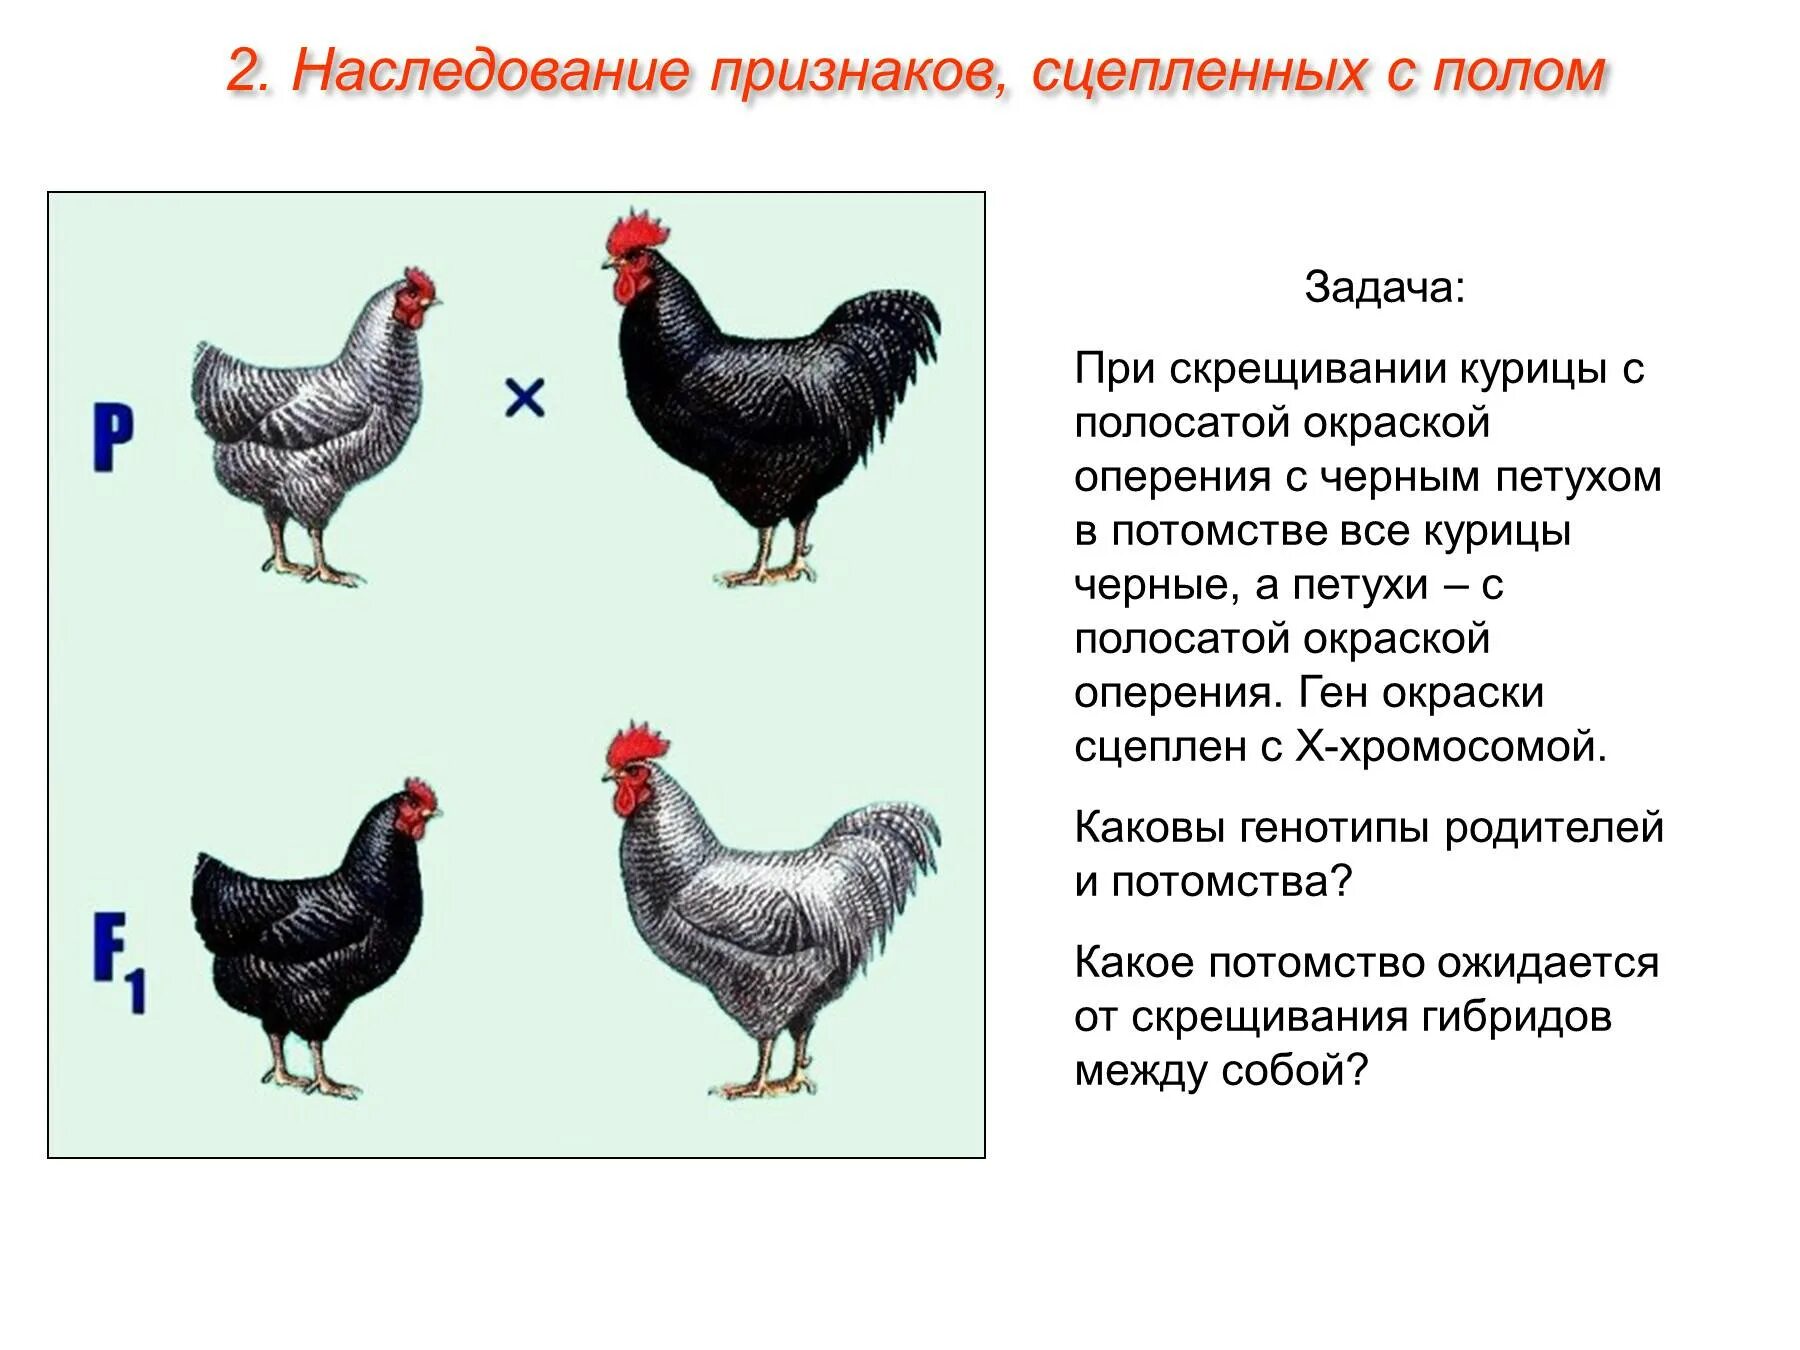 Наследование признаков сцепленных с полом. Задачи сцепленные с полом. Генотип курицы. Скрещивание кур.